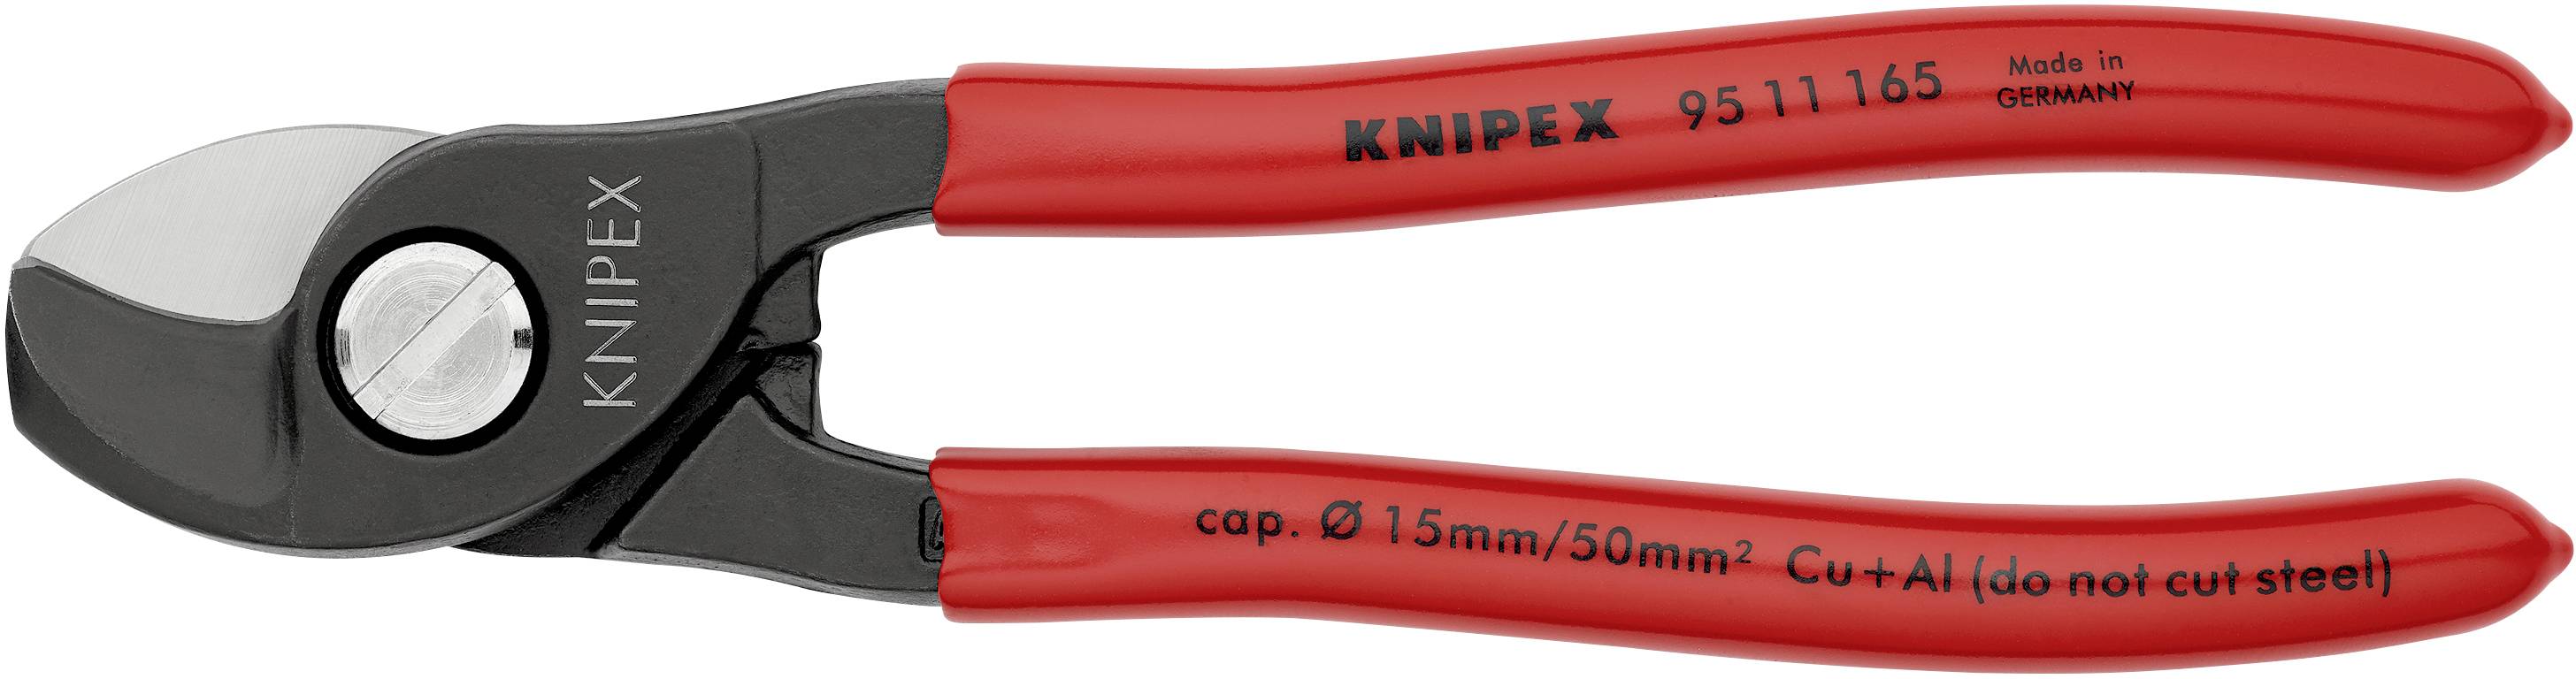 معالج دقيق إمبراطورية رضا  Knipex 95 11 165 Cable cutter Suitable for (cable stripping)  Single/multi-core aluminium and copper cables 15 mm 50 mm | Conrad.com